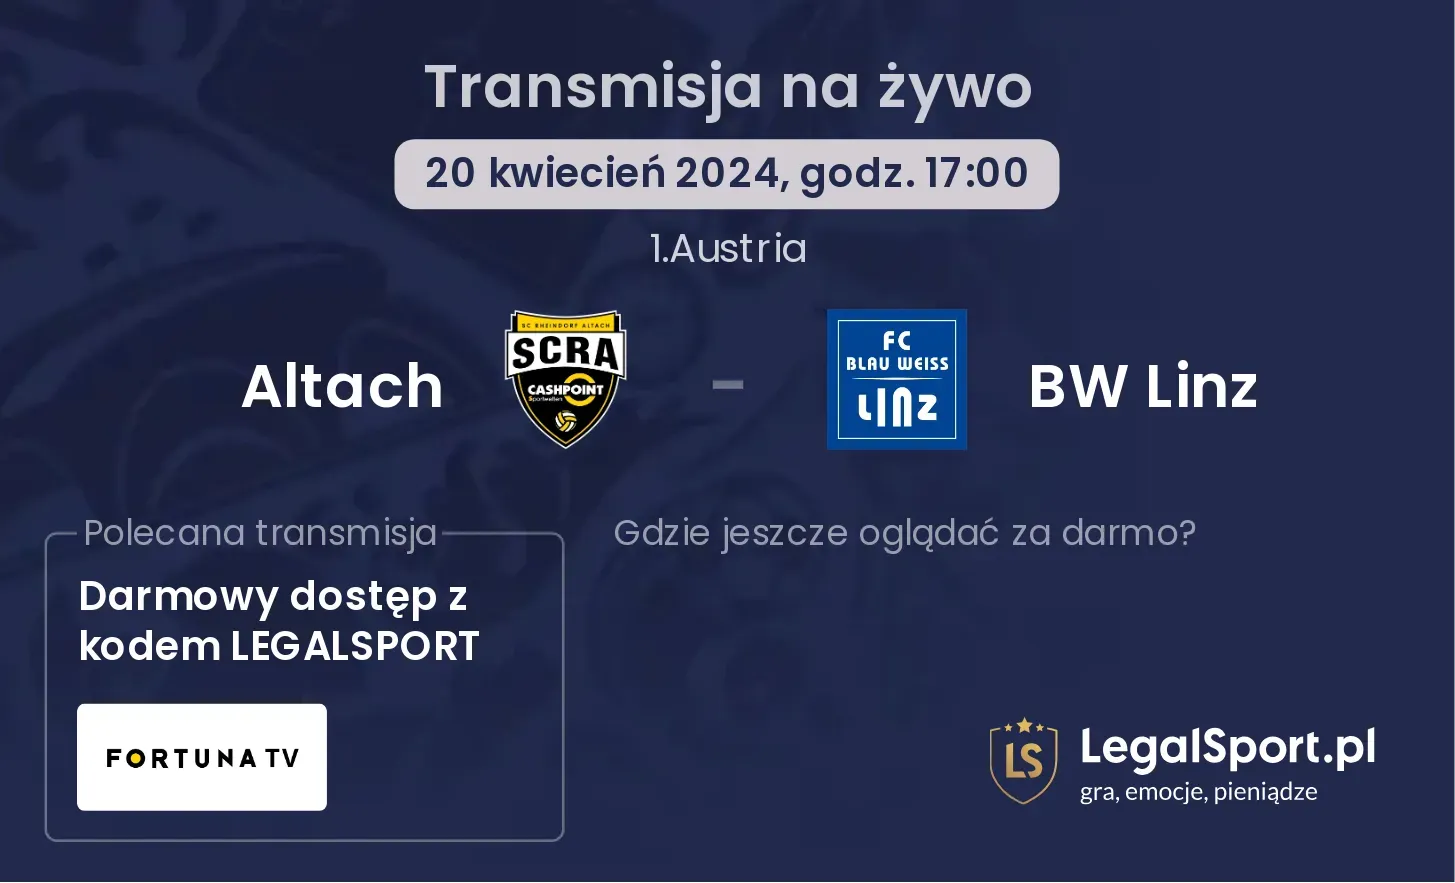 Altach - BW Linz transmisja na żywo